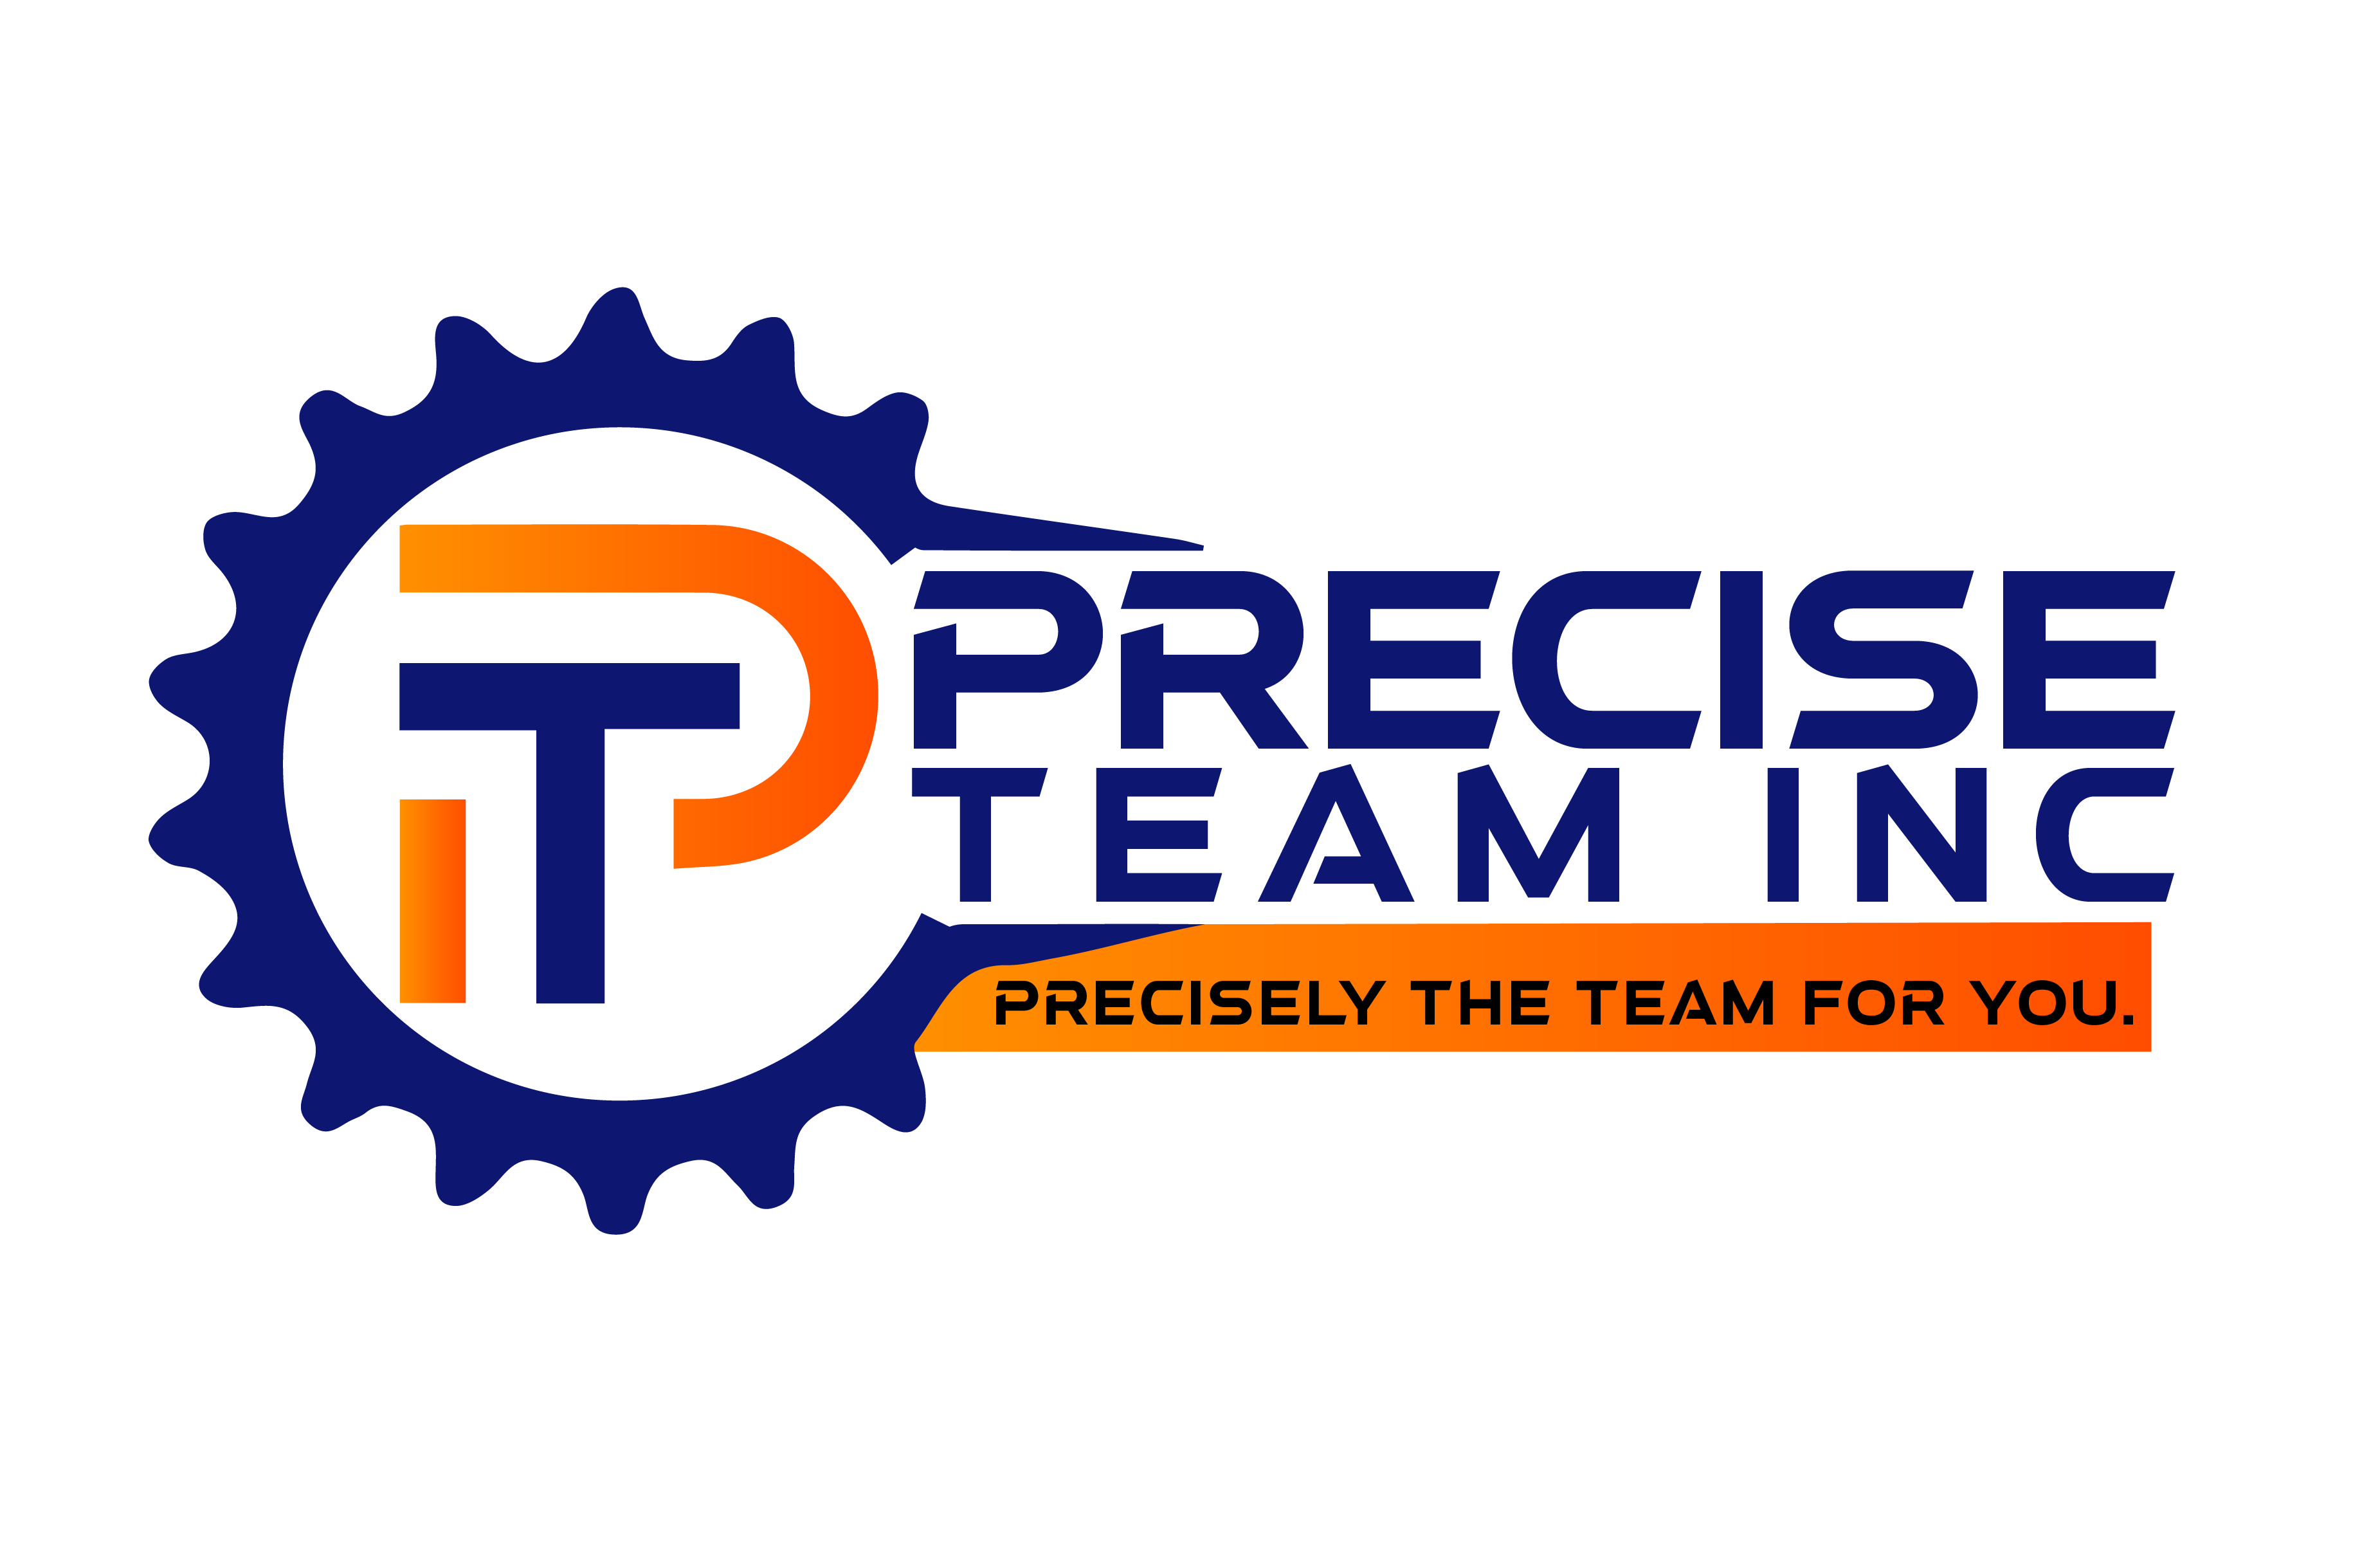 Precise Team Inc